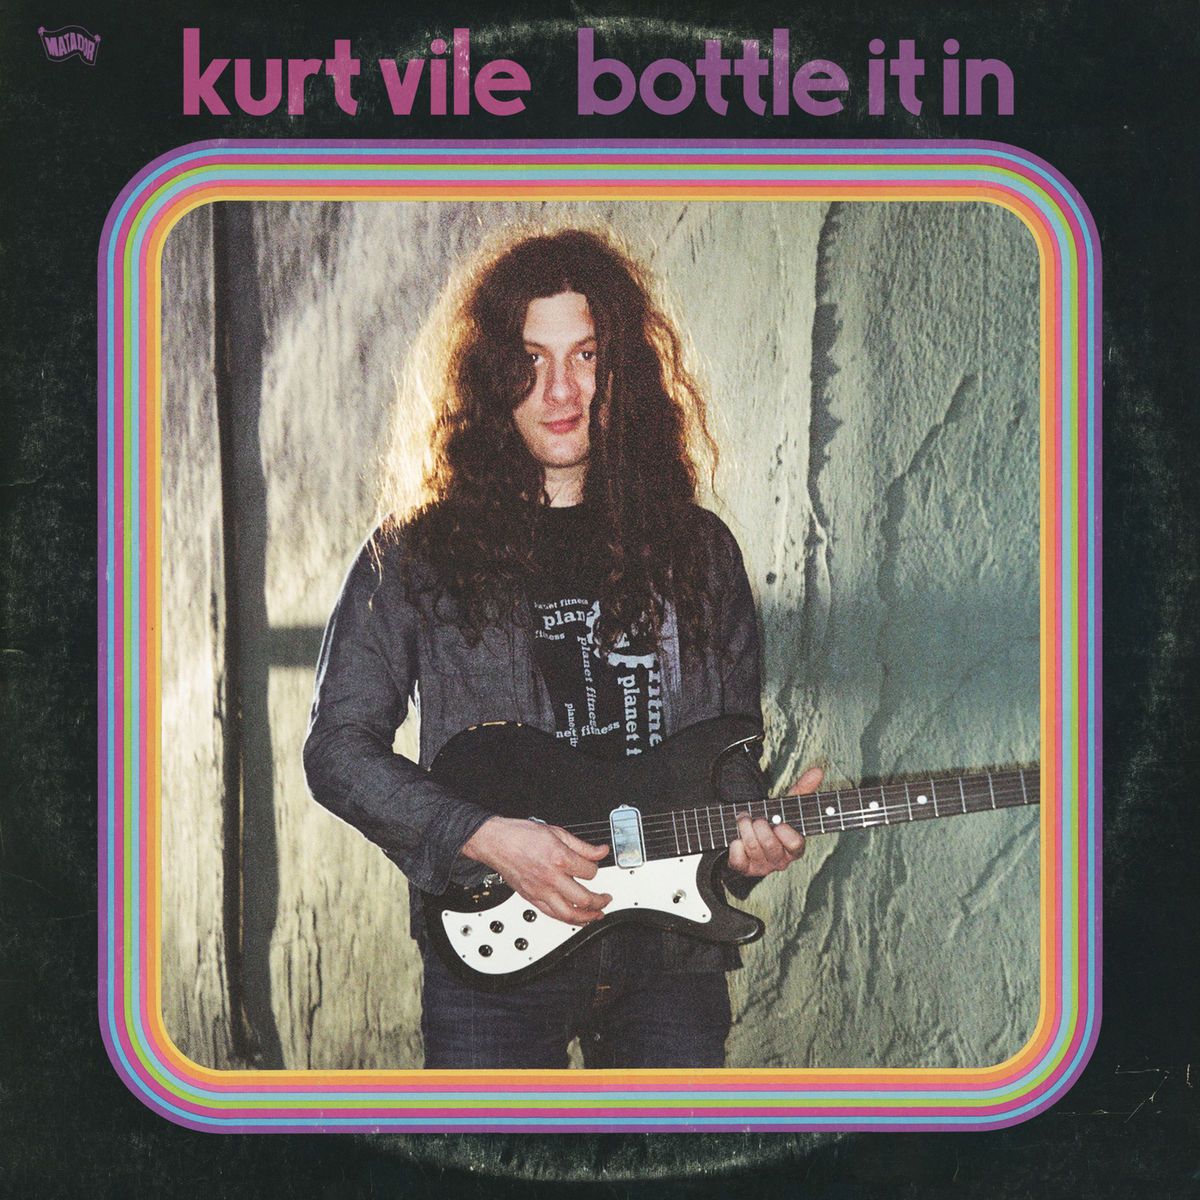 Kurt Vile / Bottle it in